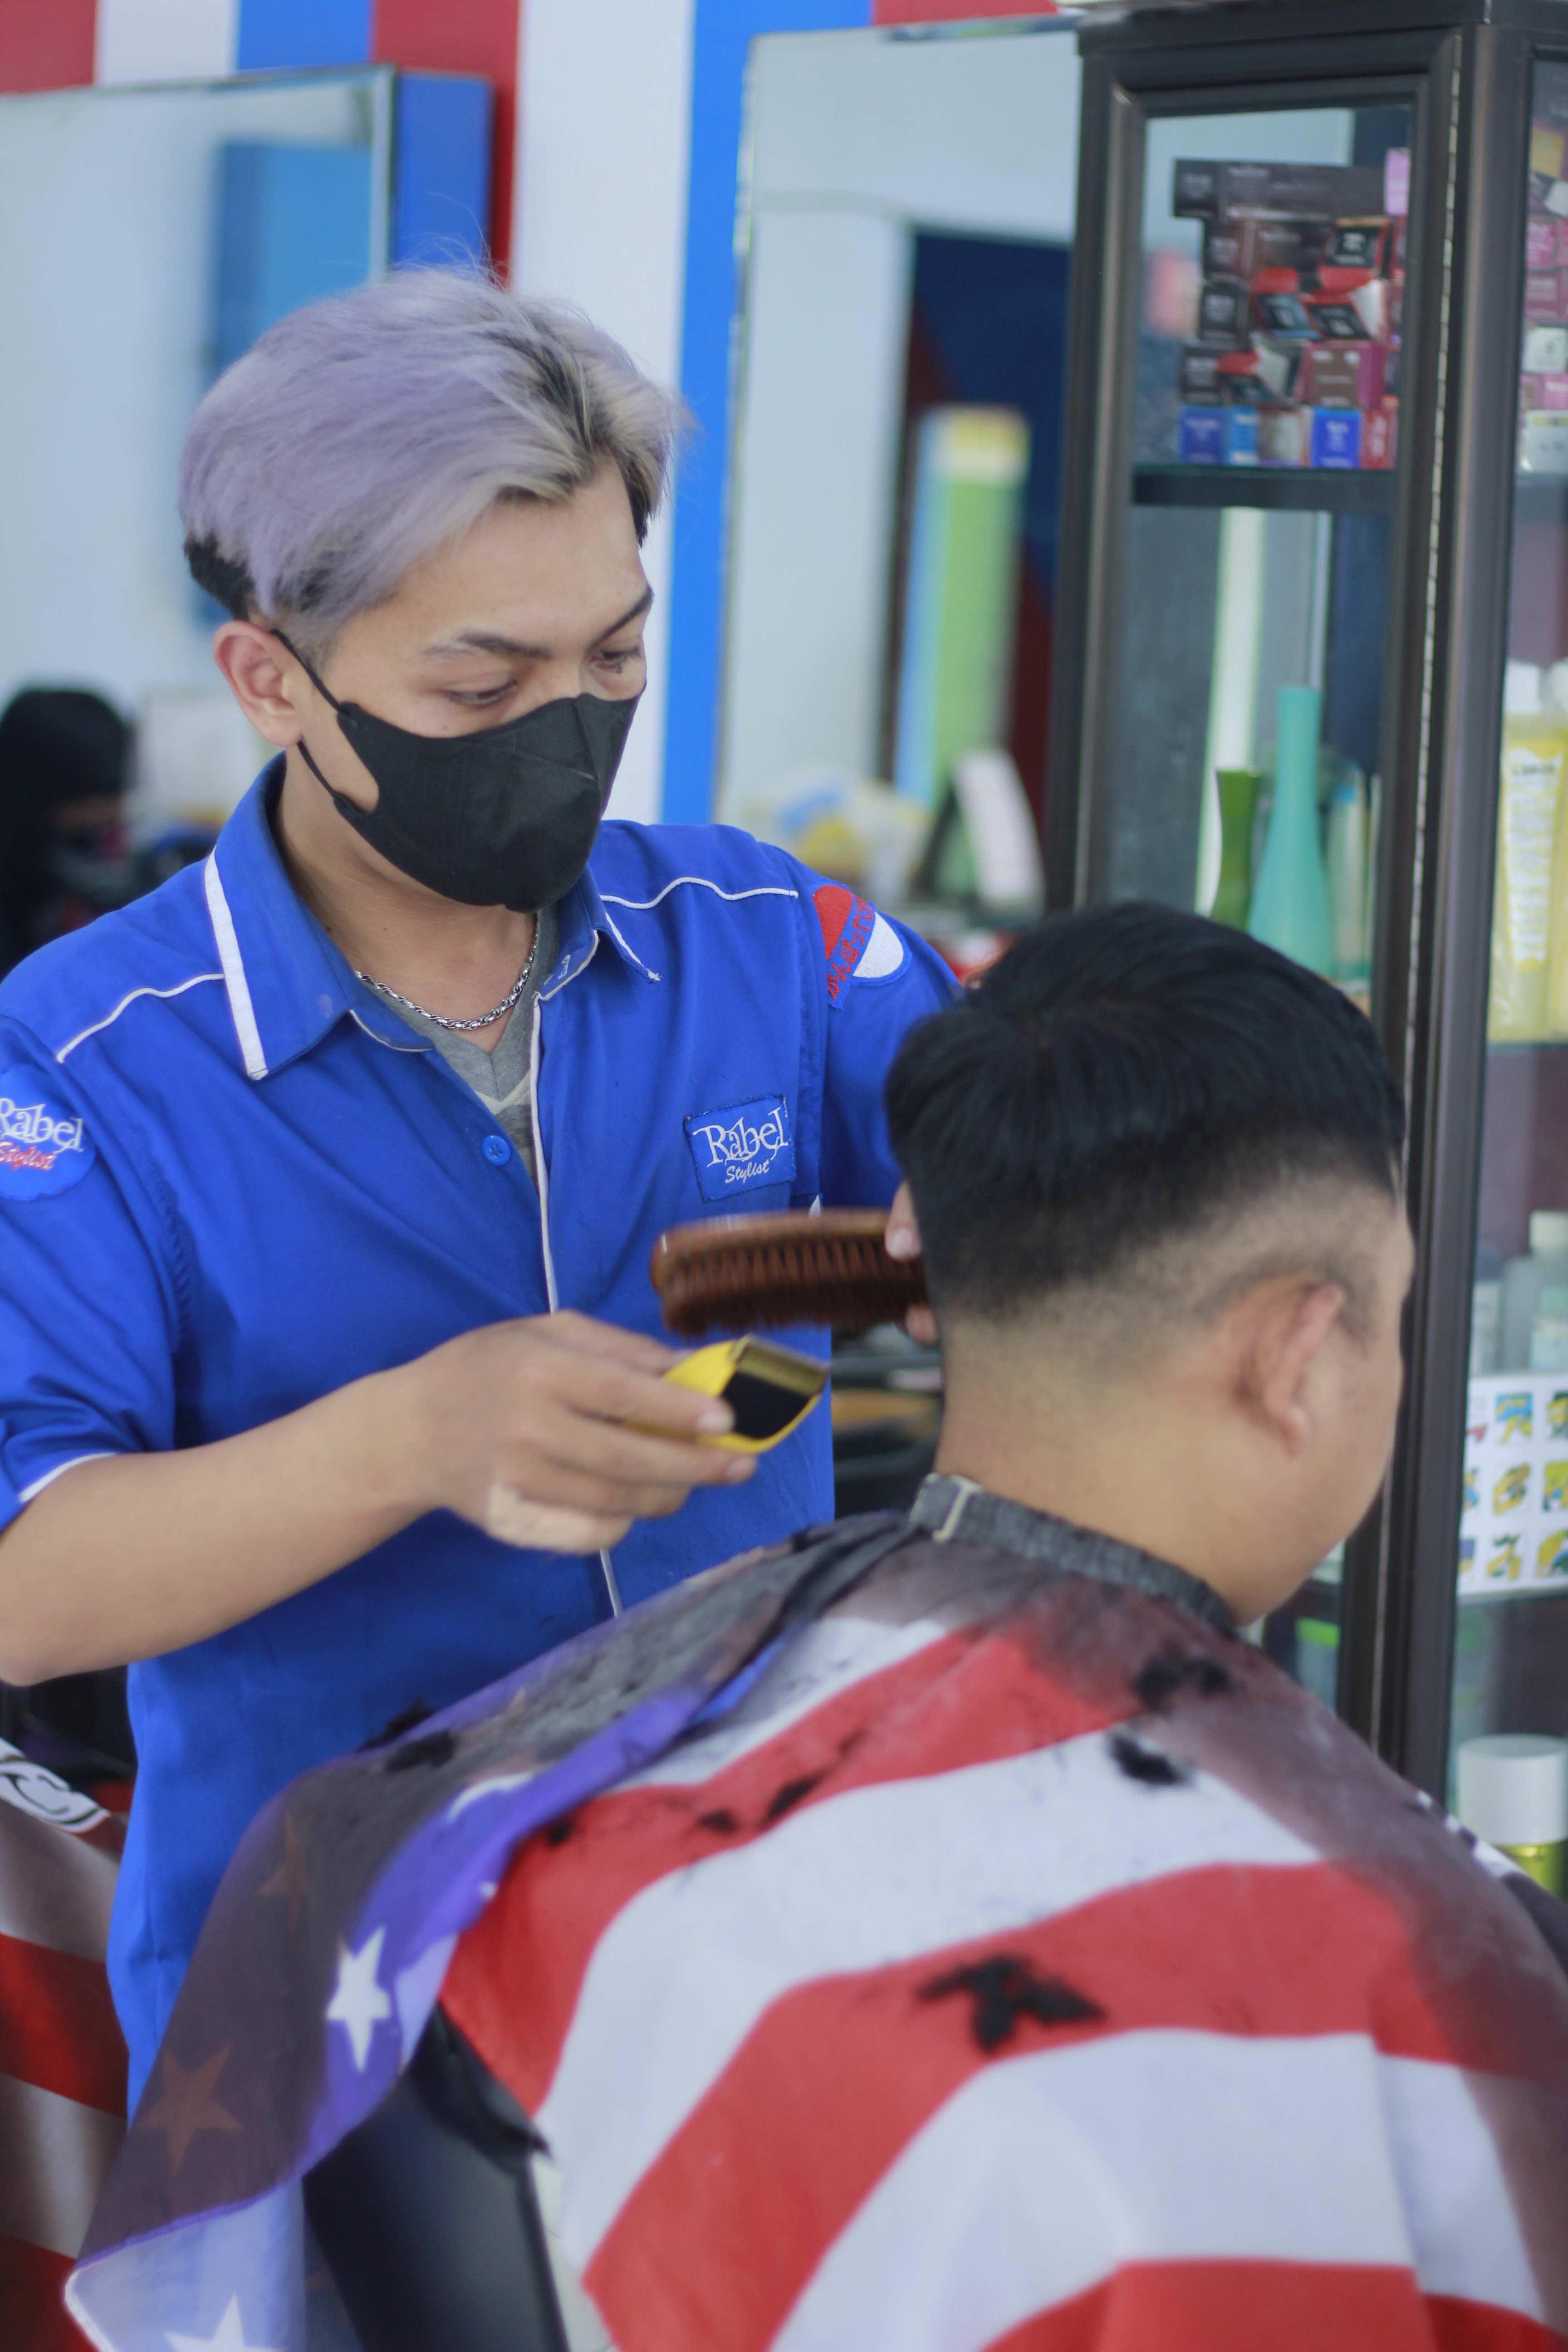 Harga Pangkas Rambut Di Kota Malang Keren